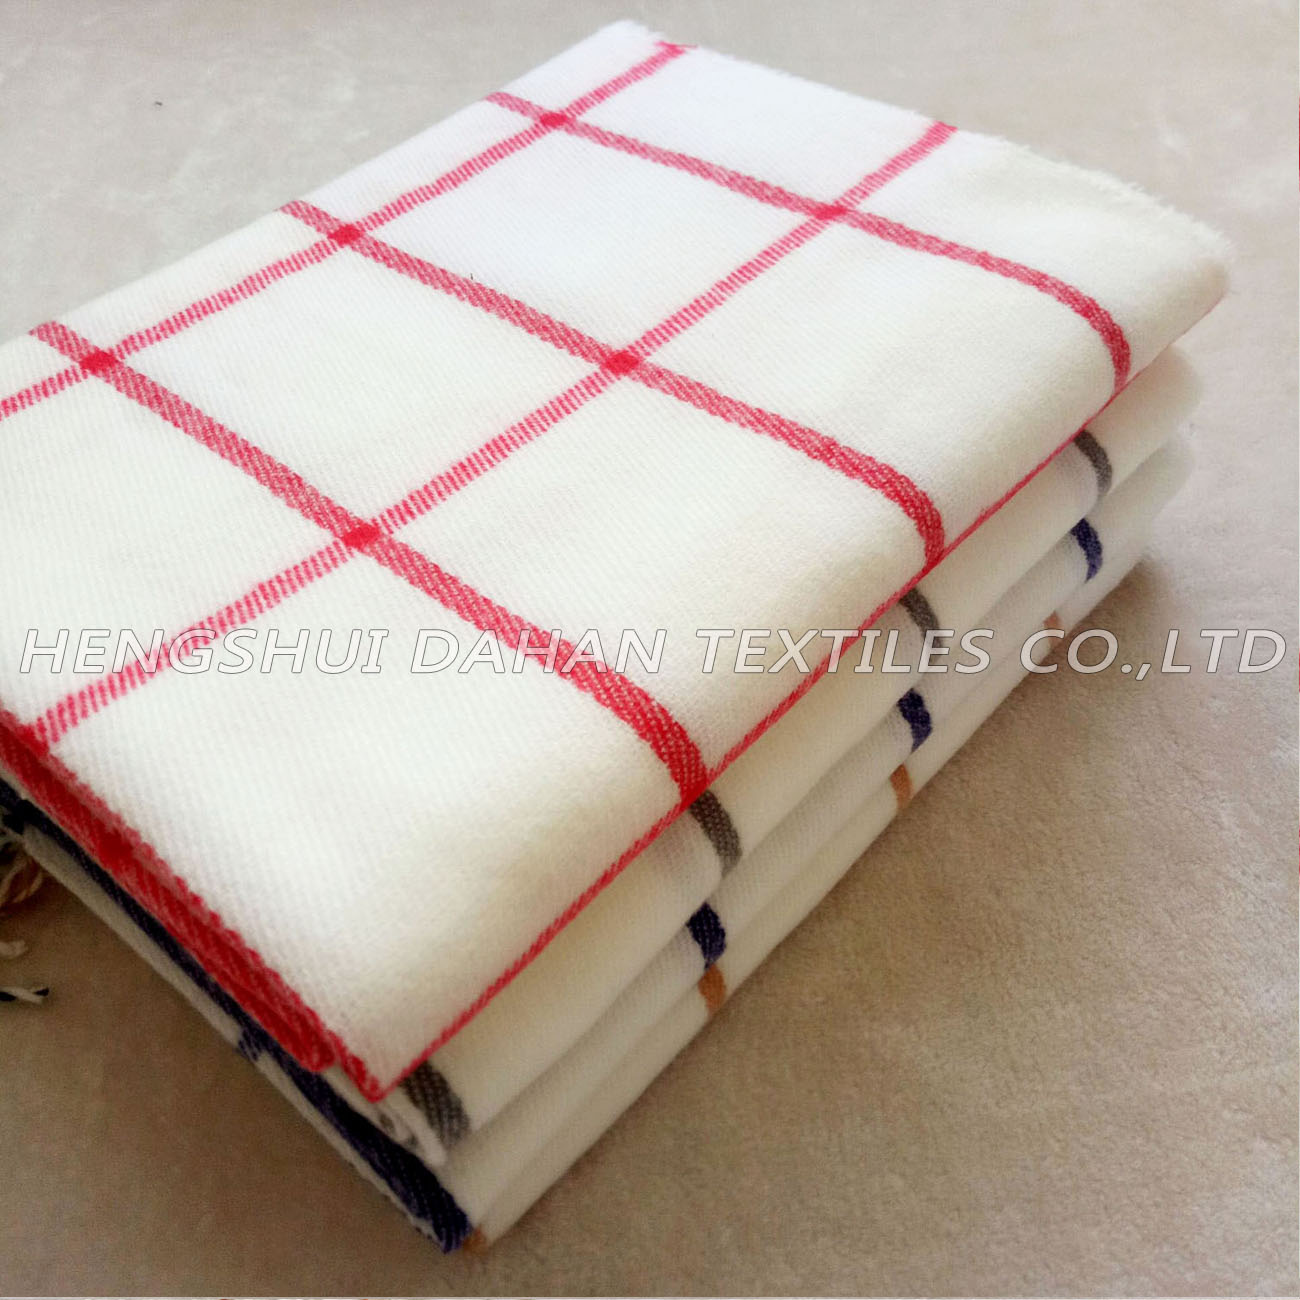 100 Acrylic Grid Scarf Shawl Blanket Bk16 192